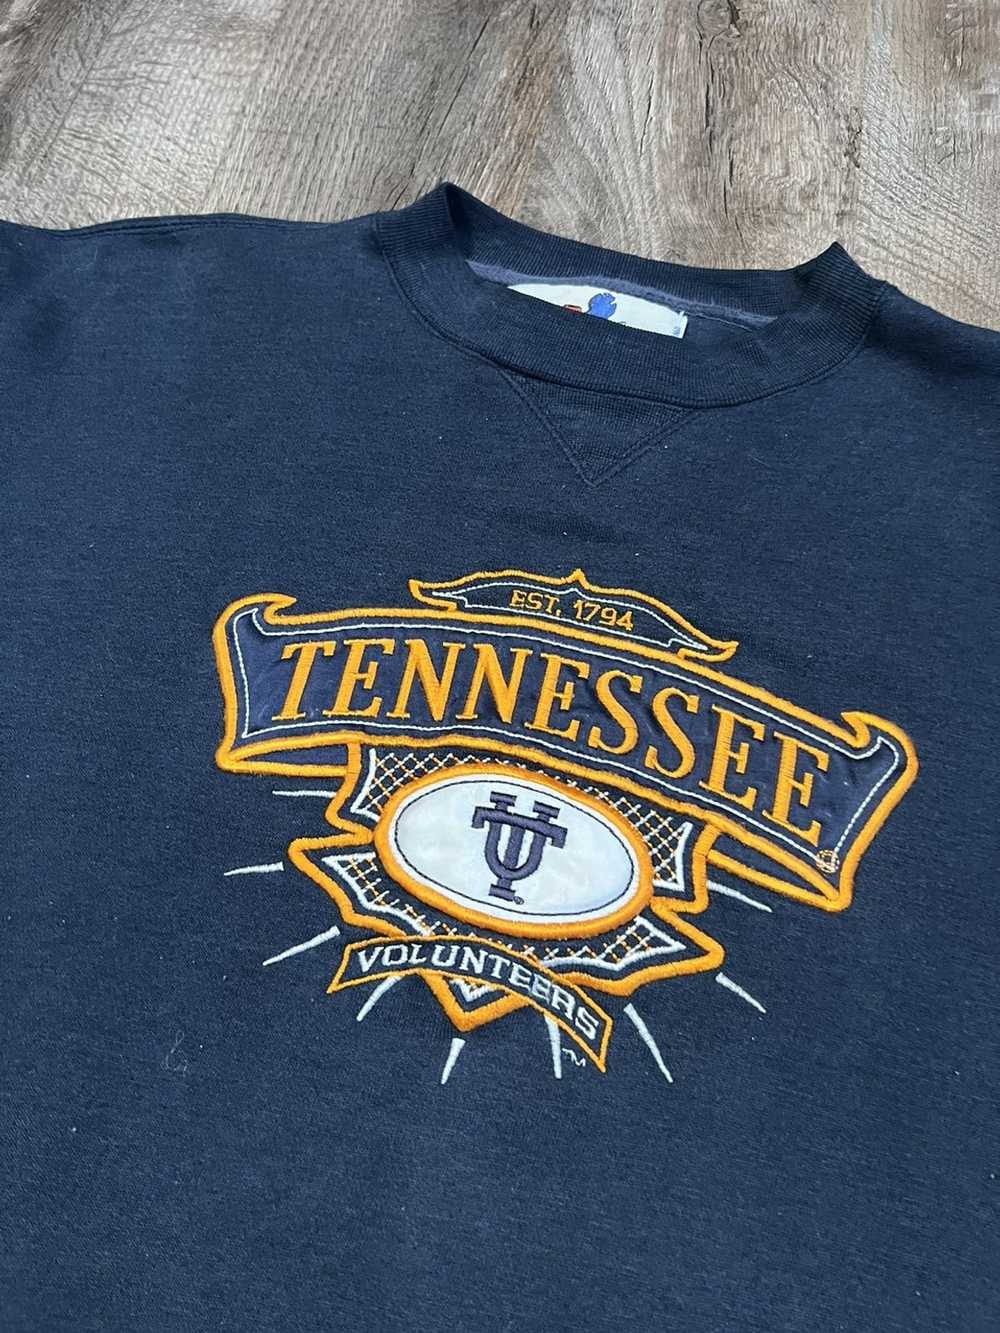 Vintage Vintage Tennessee Volunteers Sweatshirt - image 4